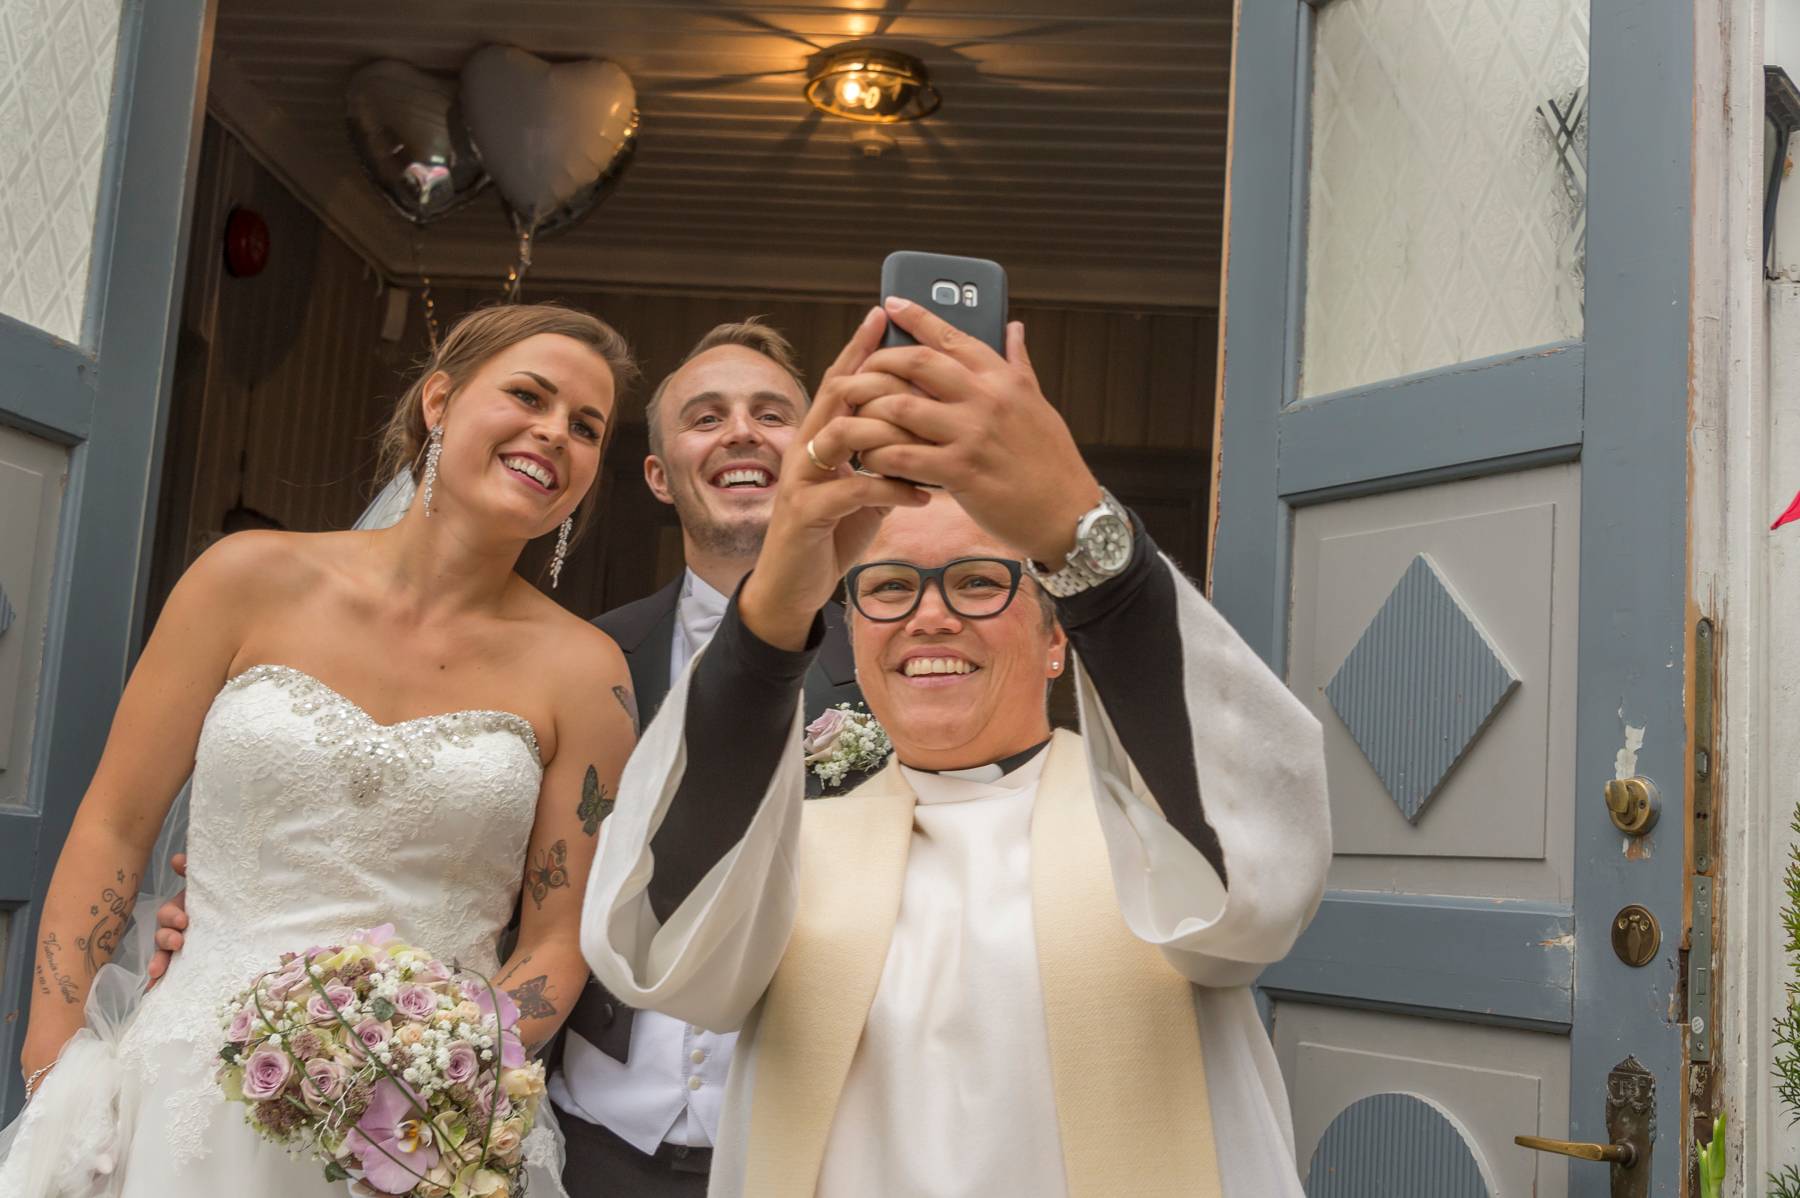 En prest som tar en selfie av seg og et brudepar